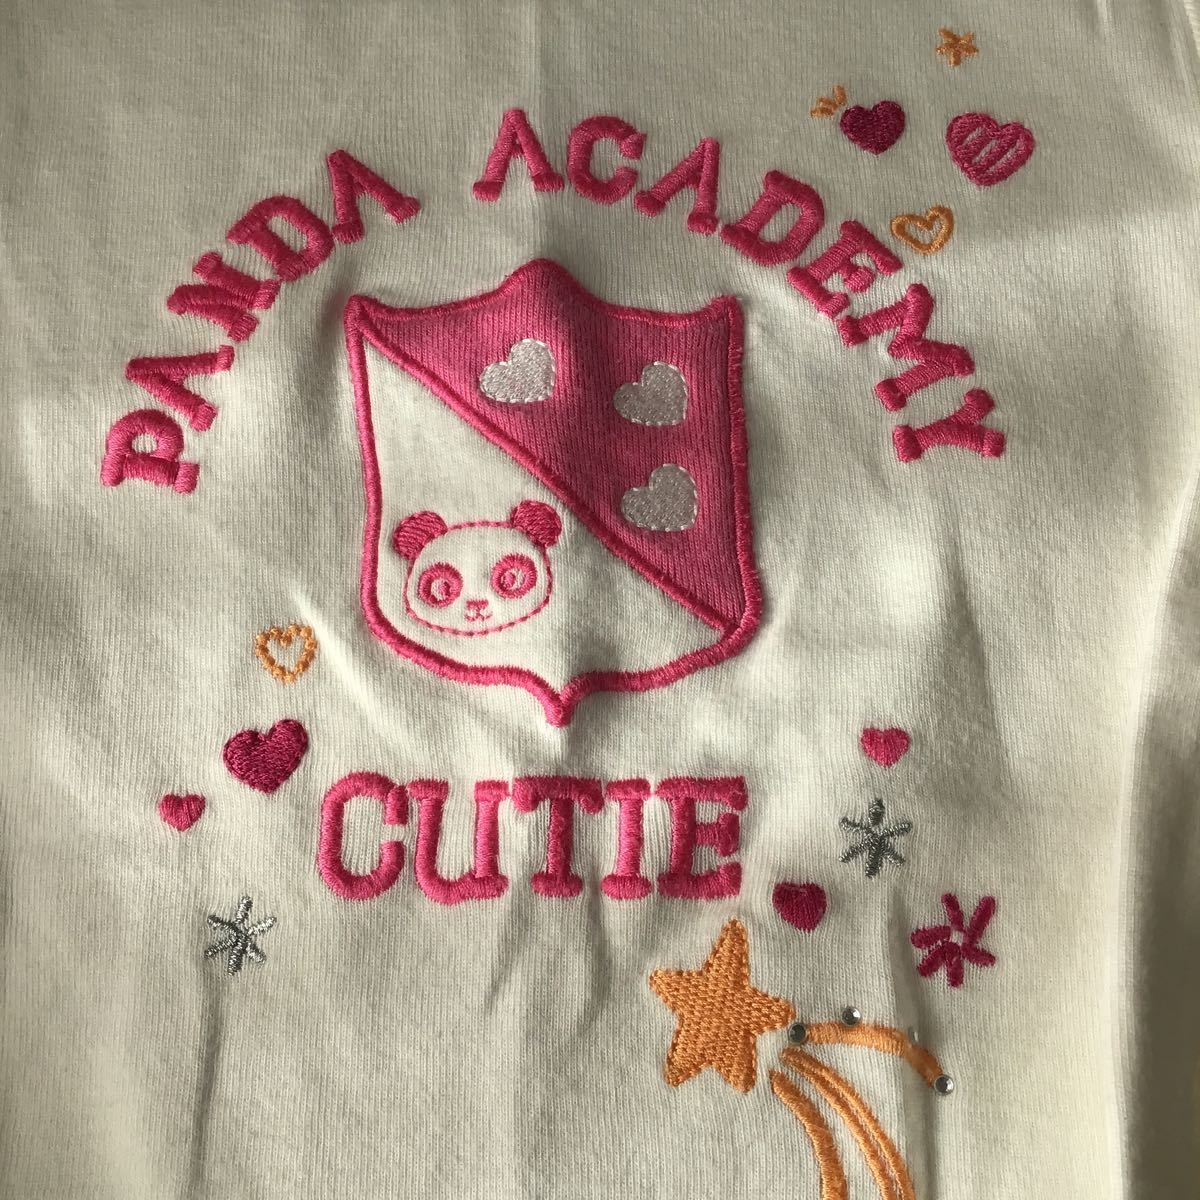 used 子供服「 GYMBORee 白色 ピンク パンダの刺繍 サイズ7 長袖 Tシャツ 」 綿100% / ジンボリー 120cmくらいのイメージです_画像5